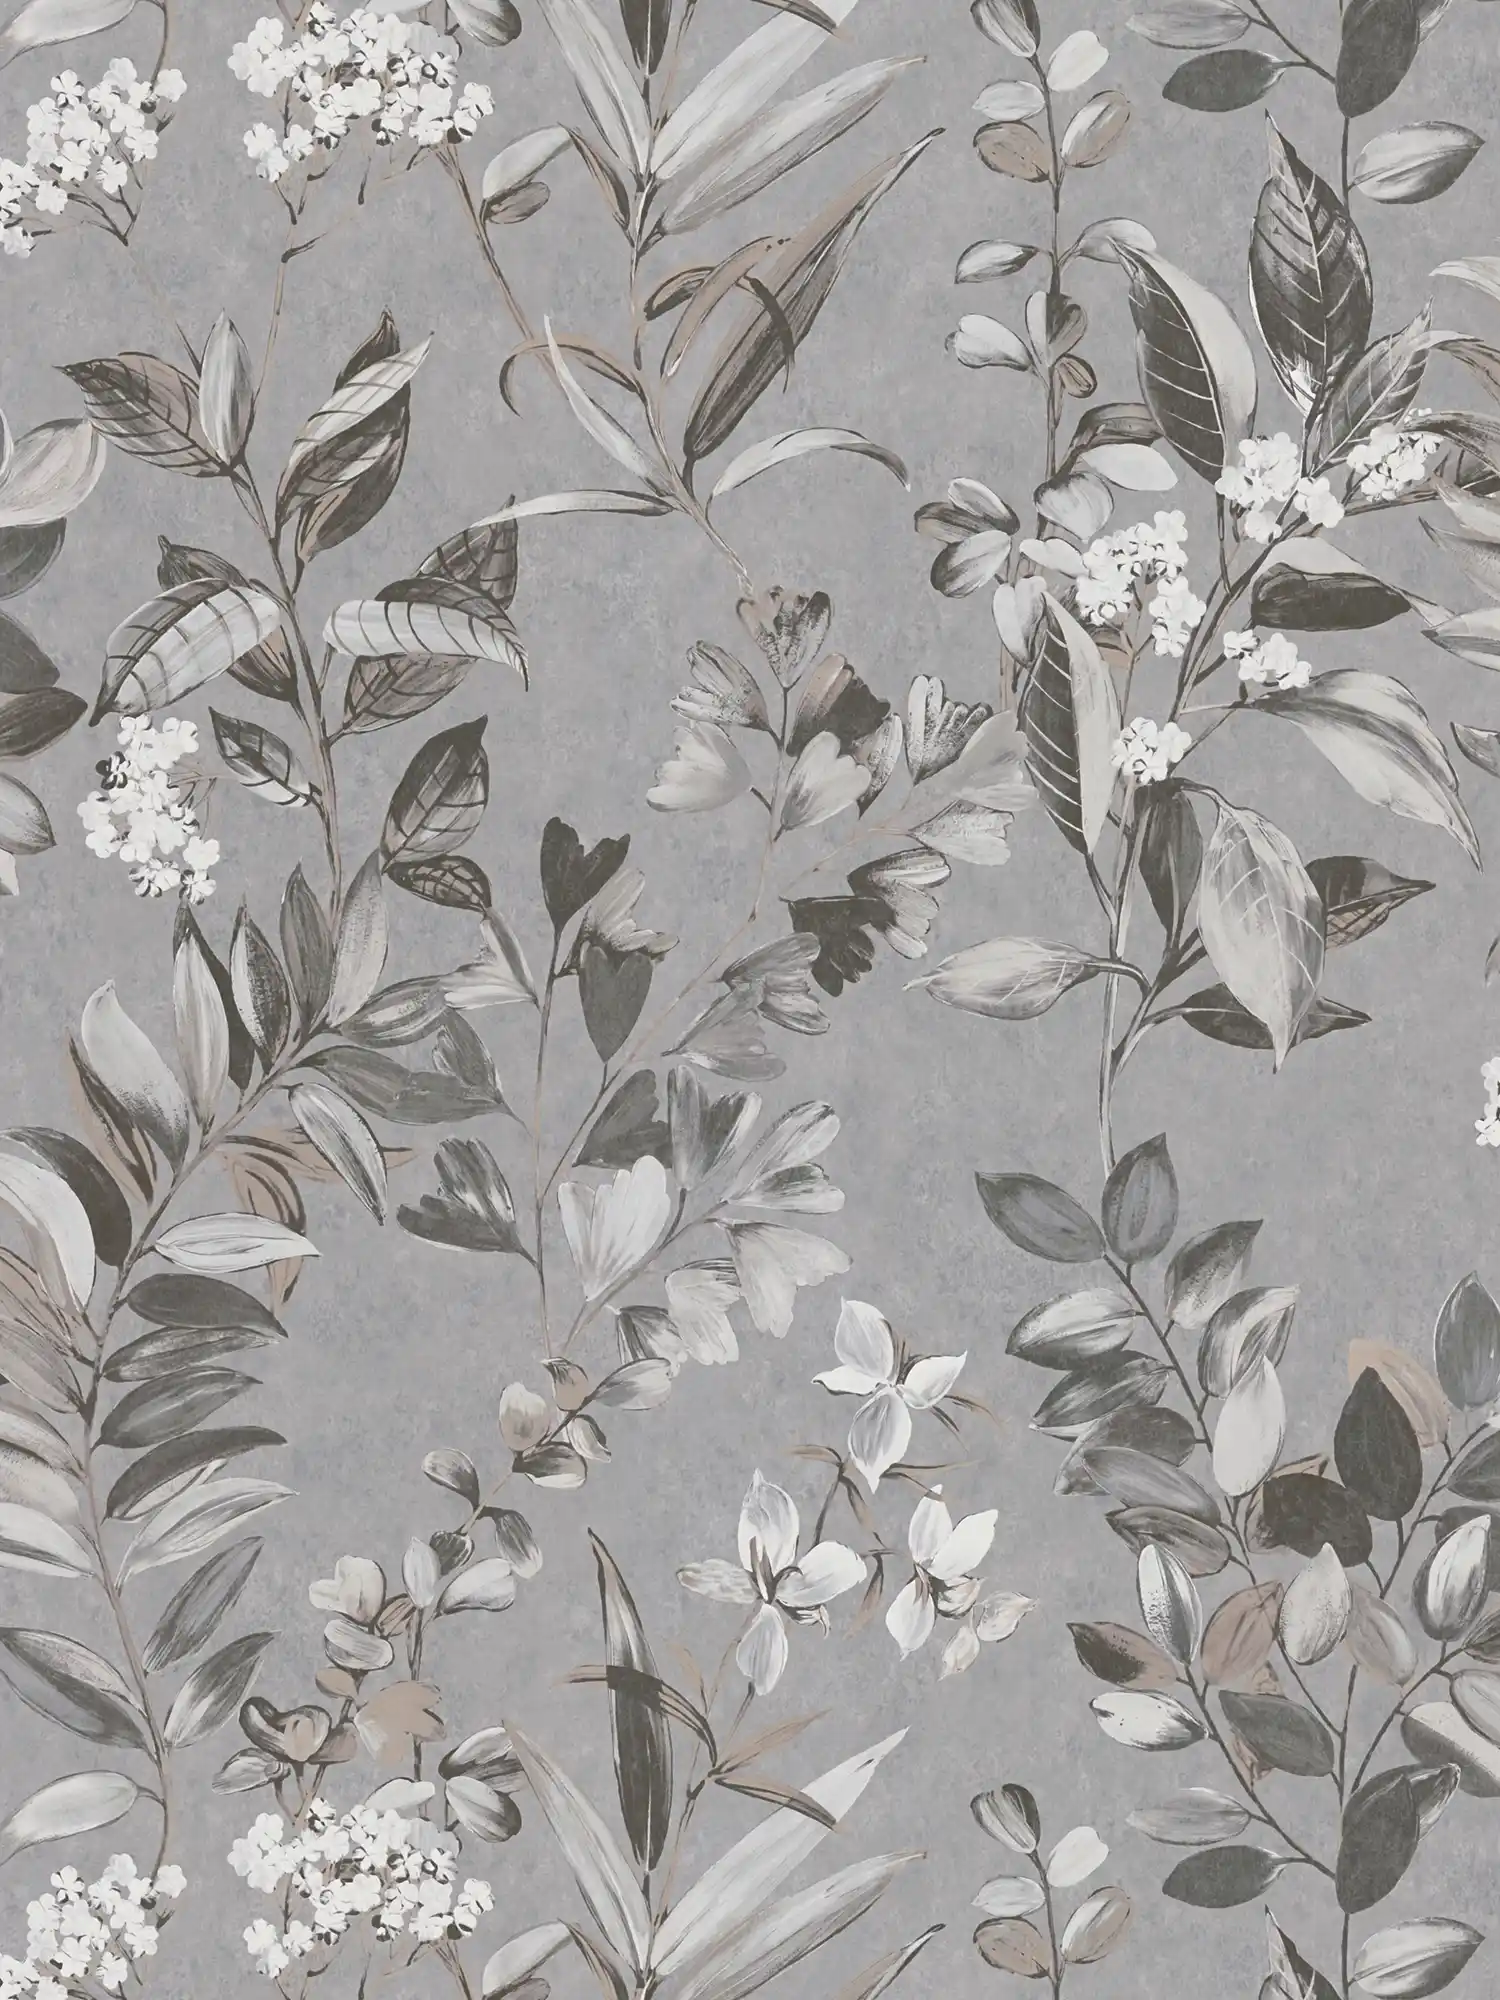         Vliestapete mit floralem Muster – Grau, Weiß, Schwarz
    